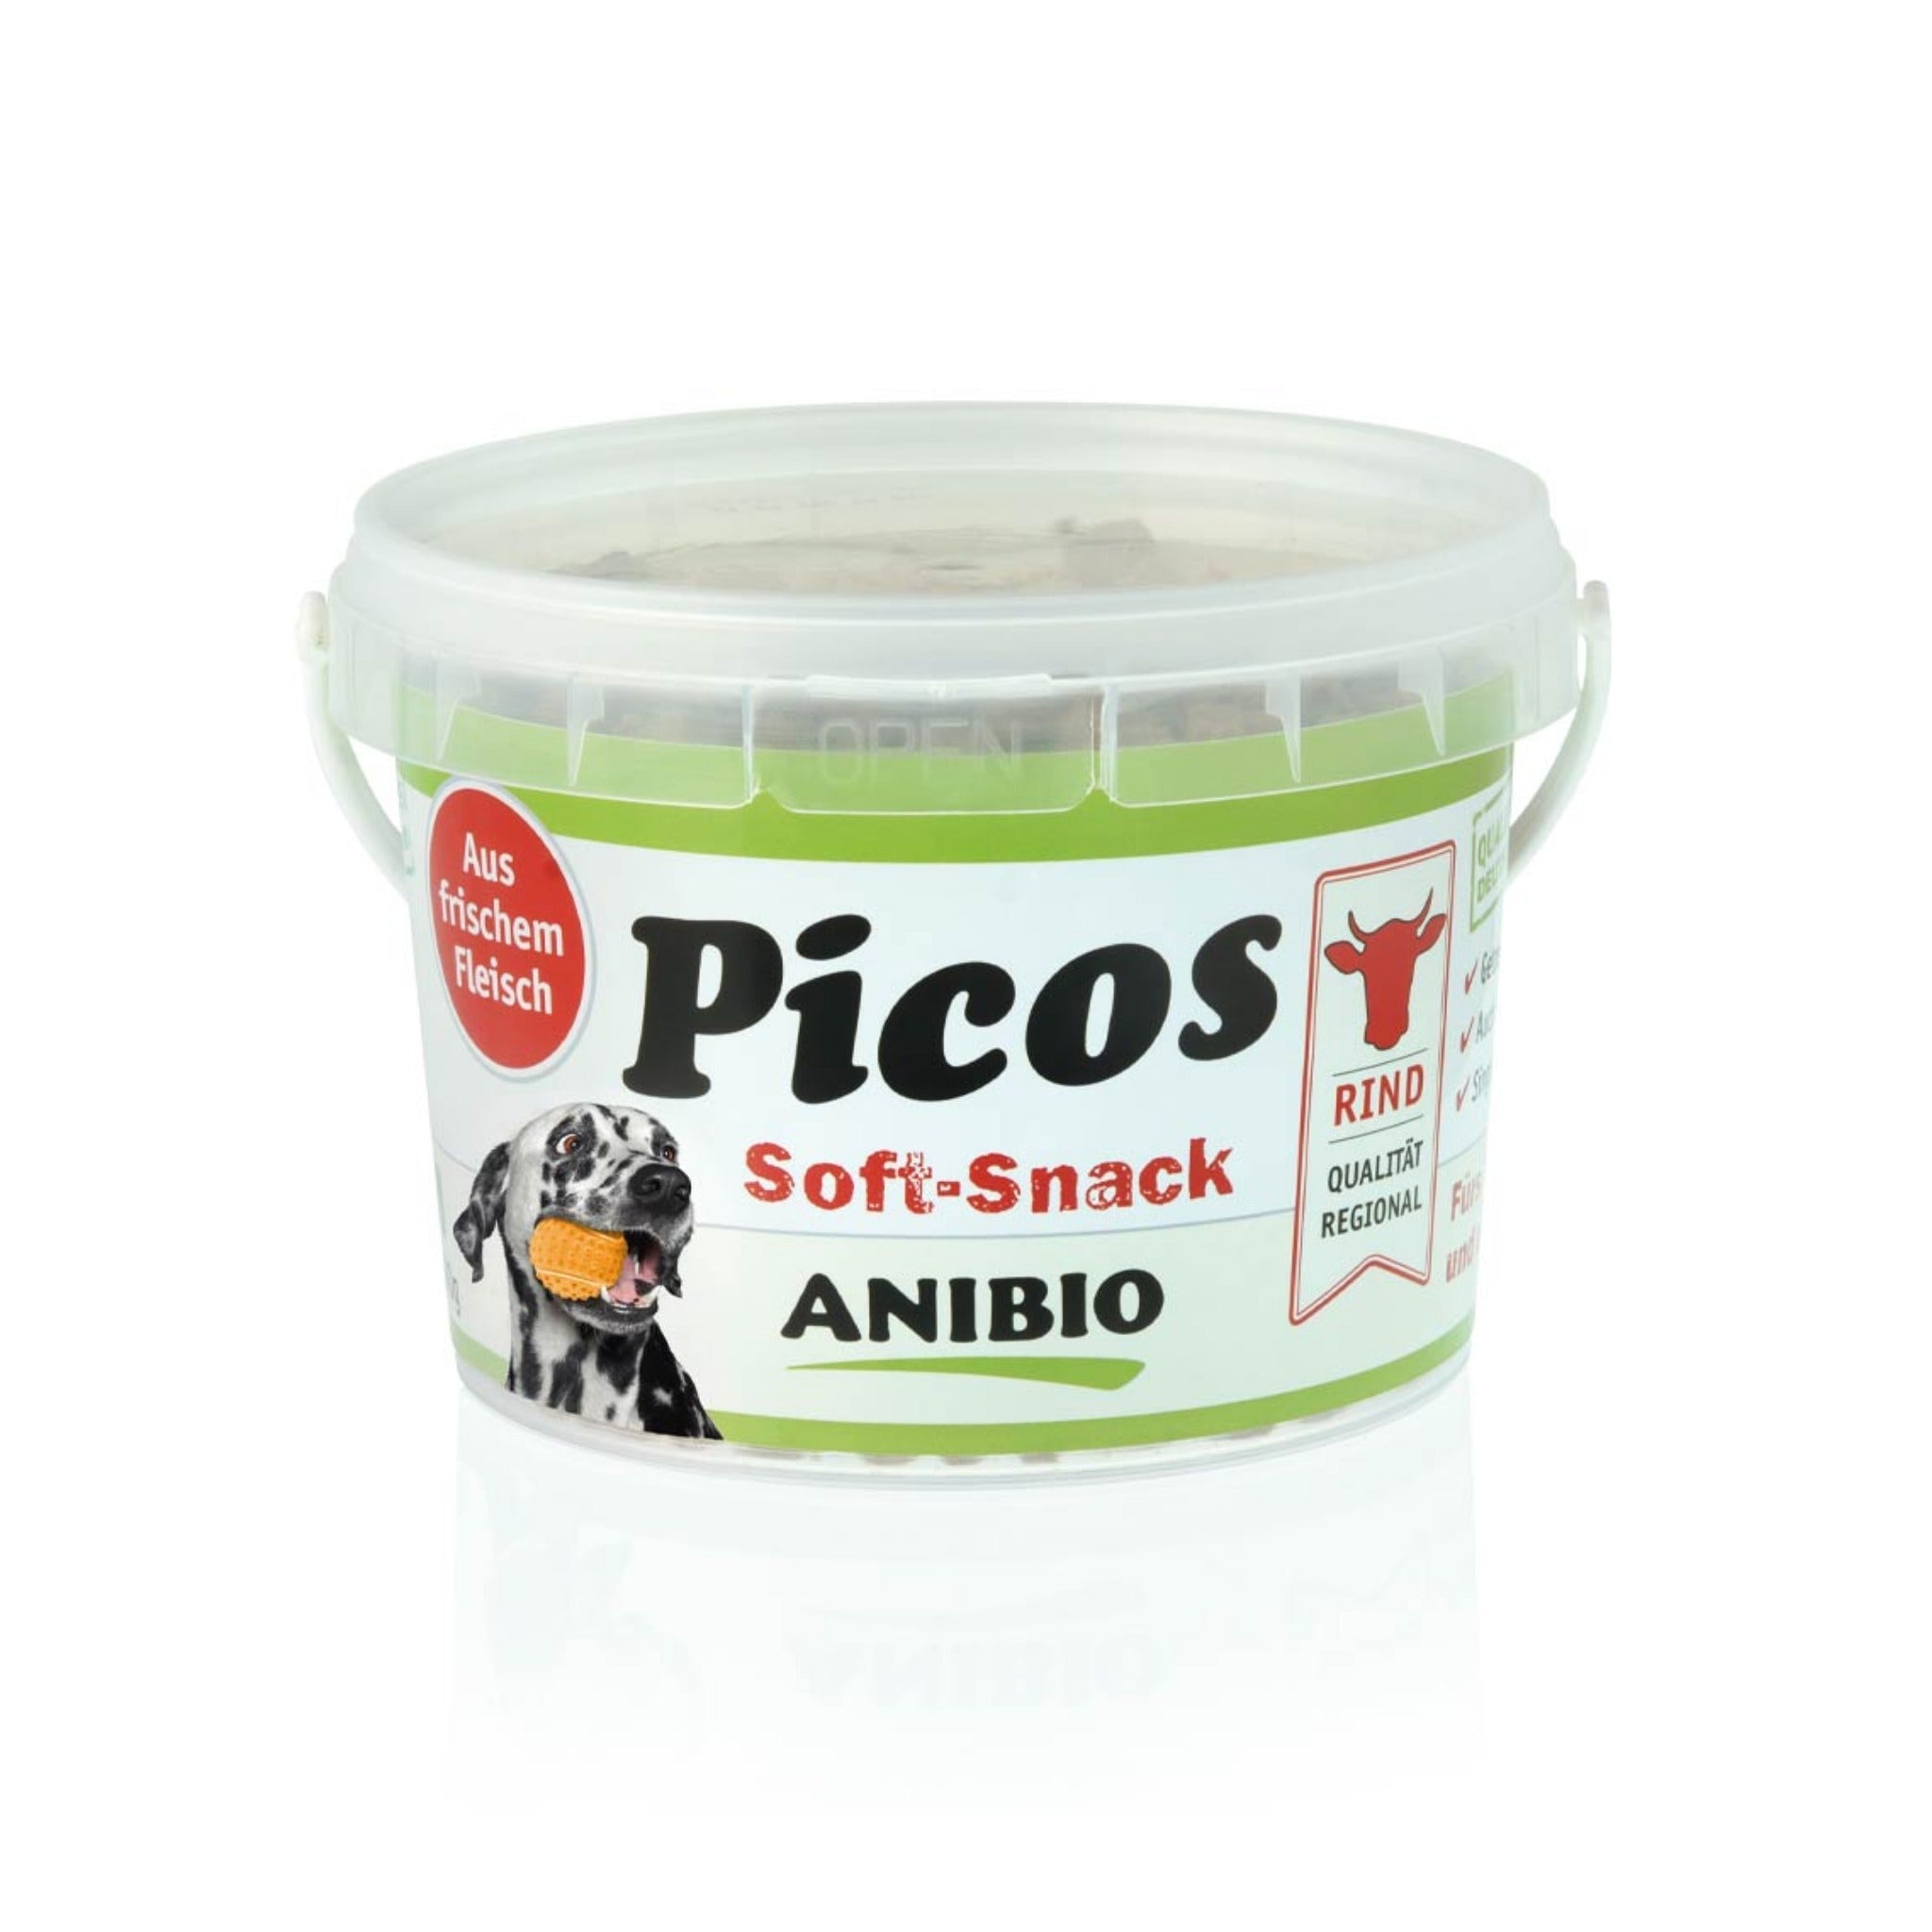 ANIBIO Picos Rind, Soft-Snack für Hunde - Woofshack